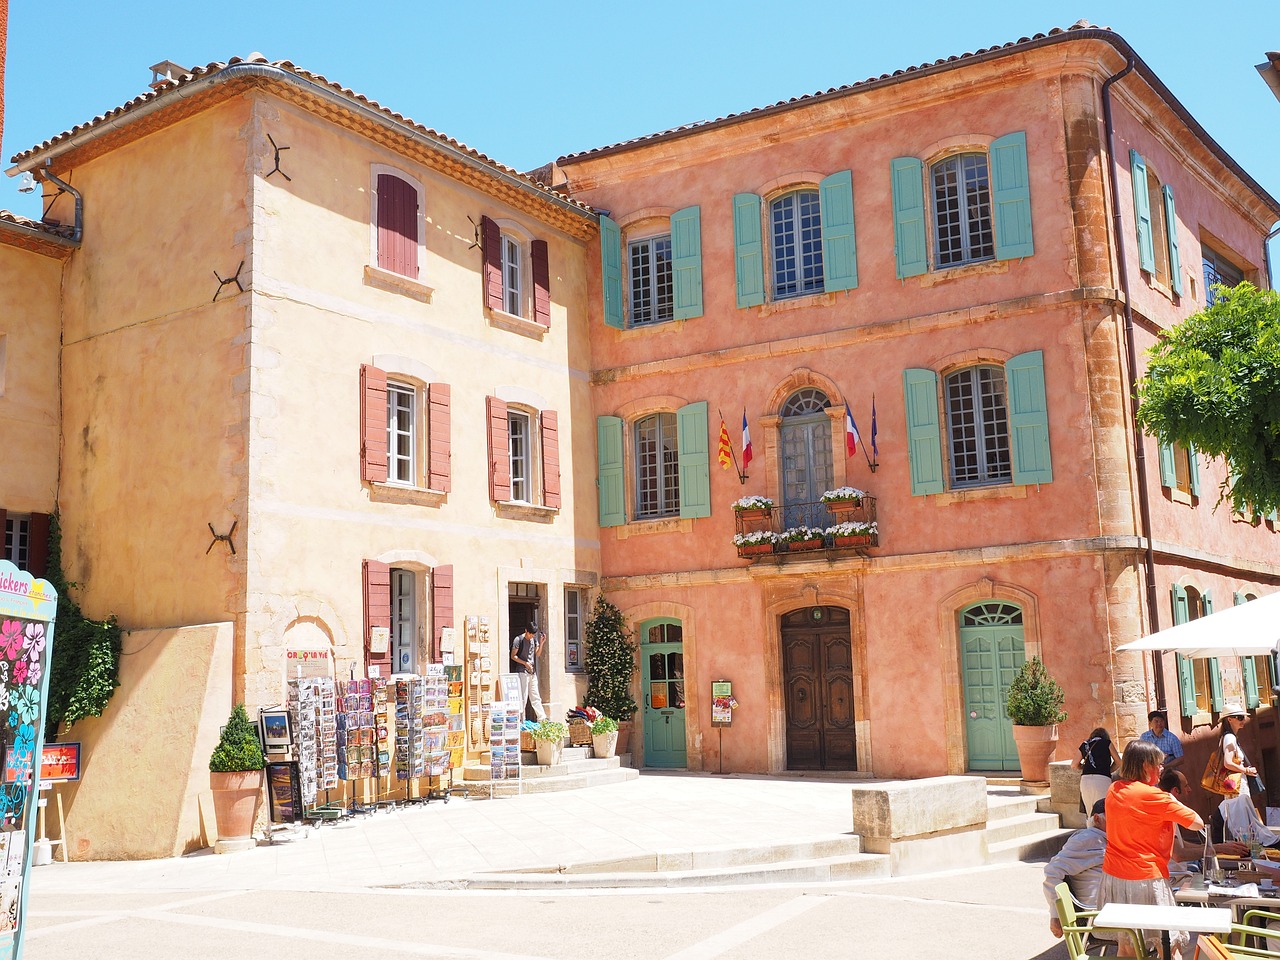 A Gastronomic Journey Through Provence-Alpes-Côte d'Azur